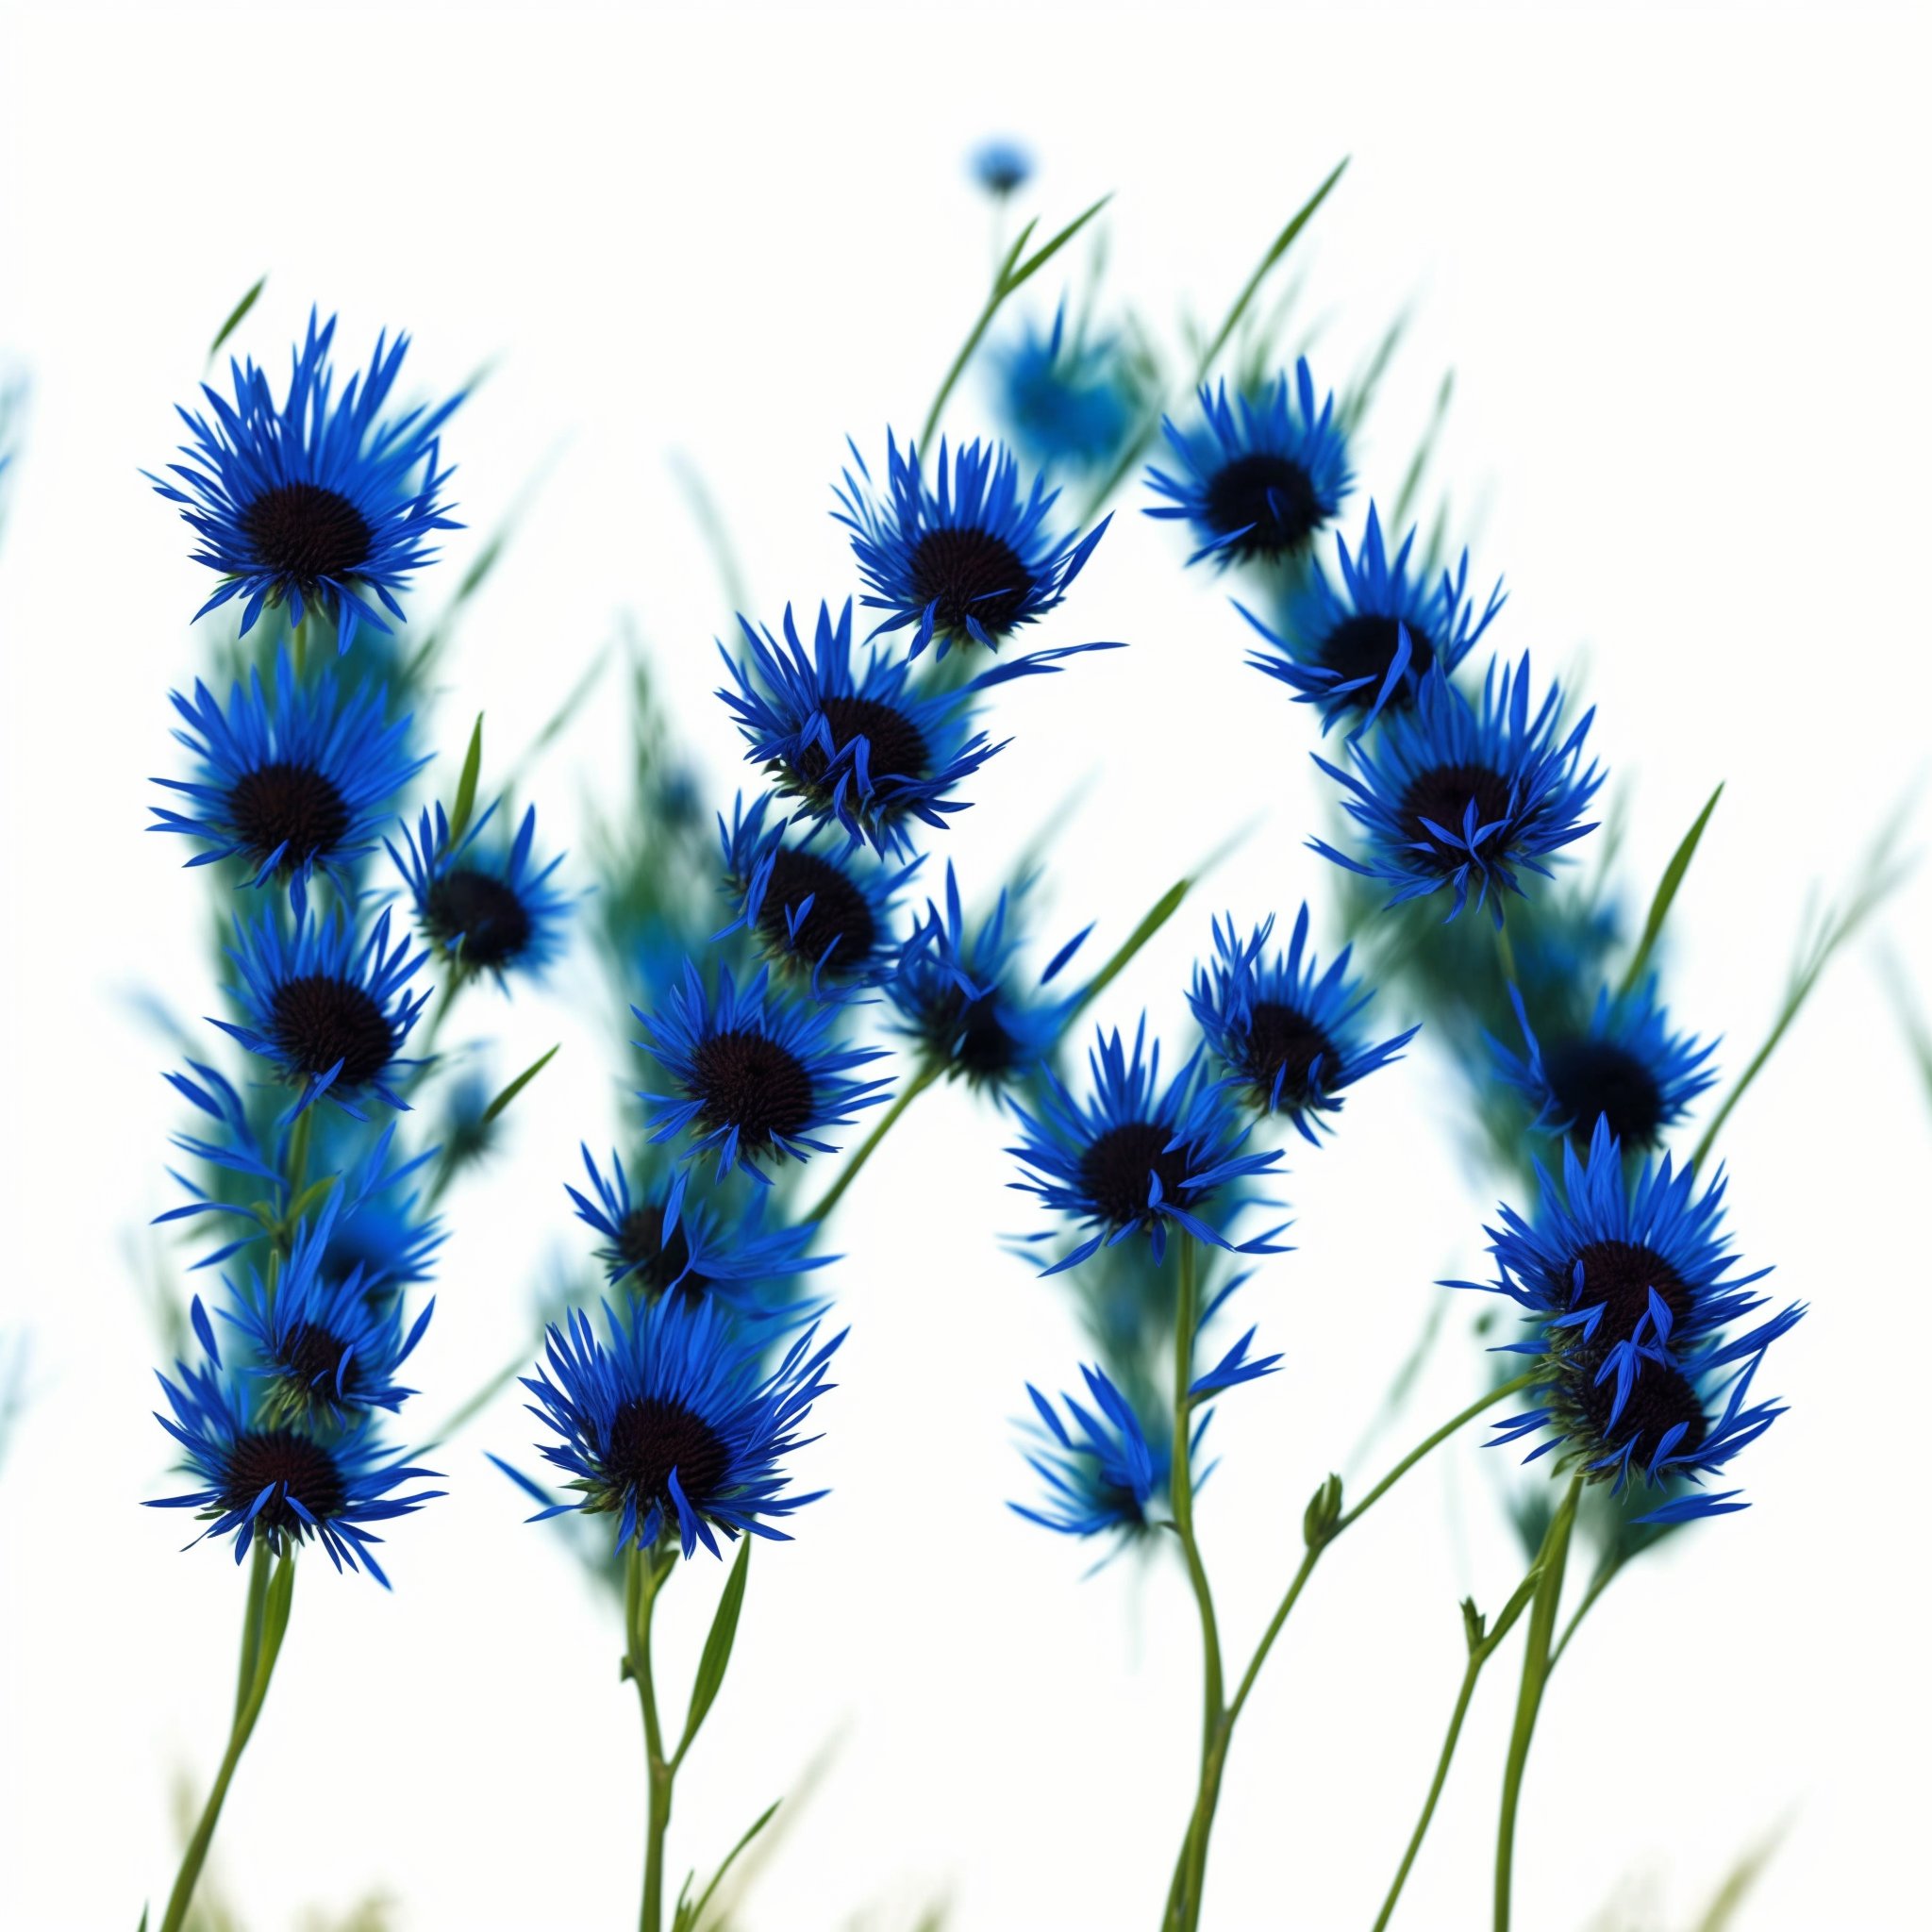 02651-2966323731-cornflowers-in-a-field-of-rye-sheaves-of-golden-rye-cornflower-blue.jpg